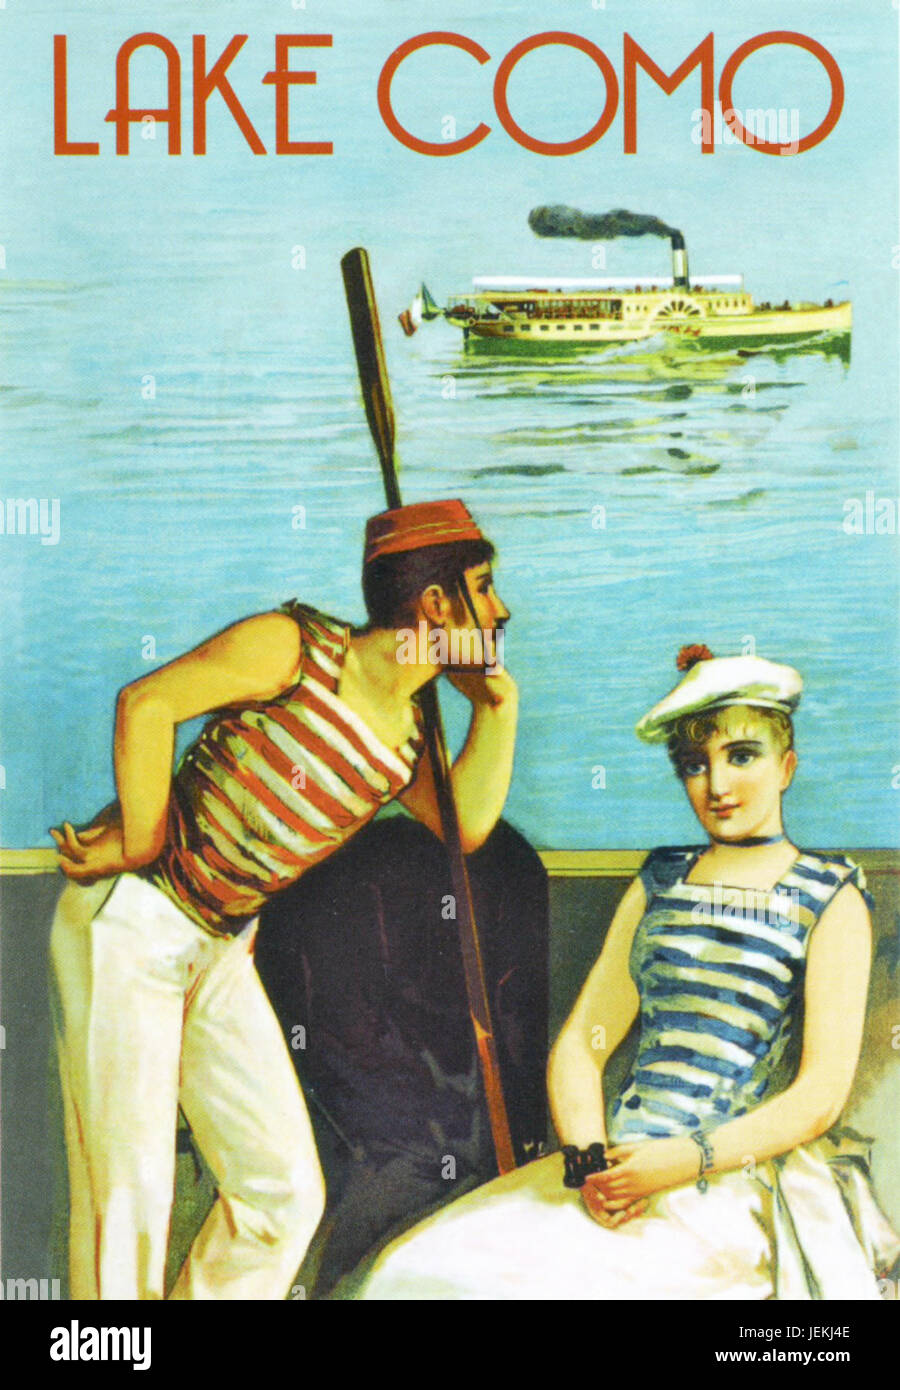 Il LAGO DI COMO, Italia. Poster promozionali circa 1910 con un traghetto steamboat in background e un marinaio riflettendo forse che la sua barca a remi giorni può essere oltre con la nuova modalità di trasporto. Foto Stock